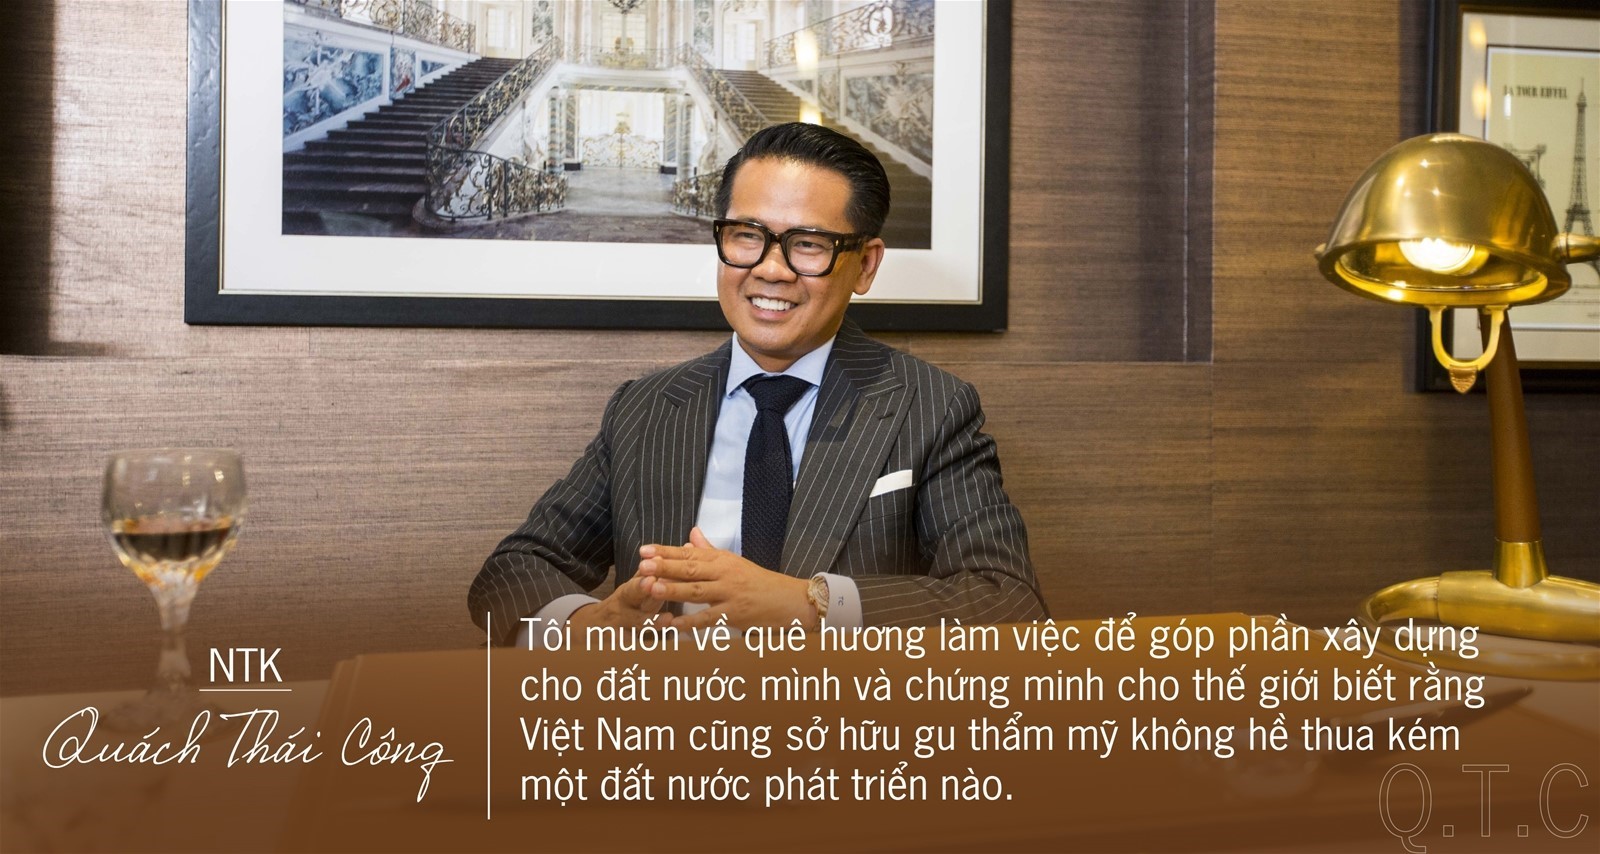 NTK Quách Thái Công: “Tôi không bán nội thất, tôi bán phong cách sống.”